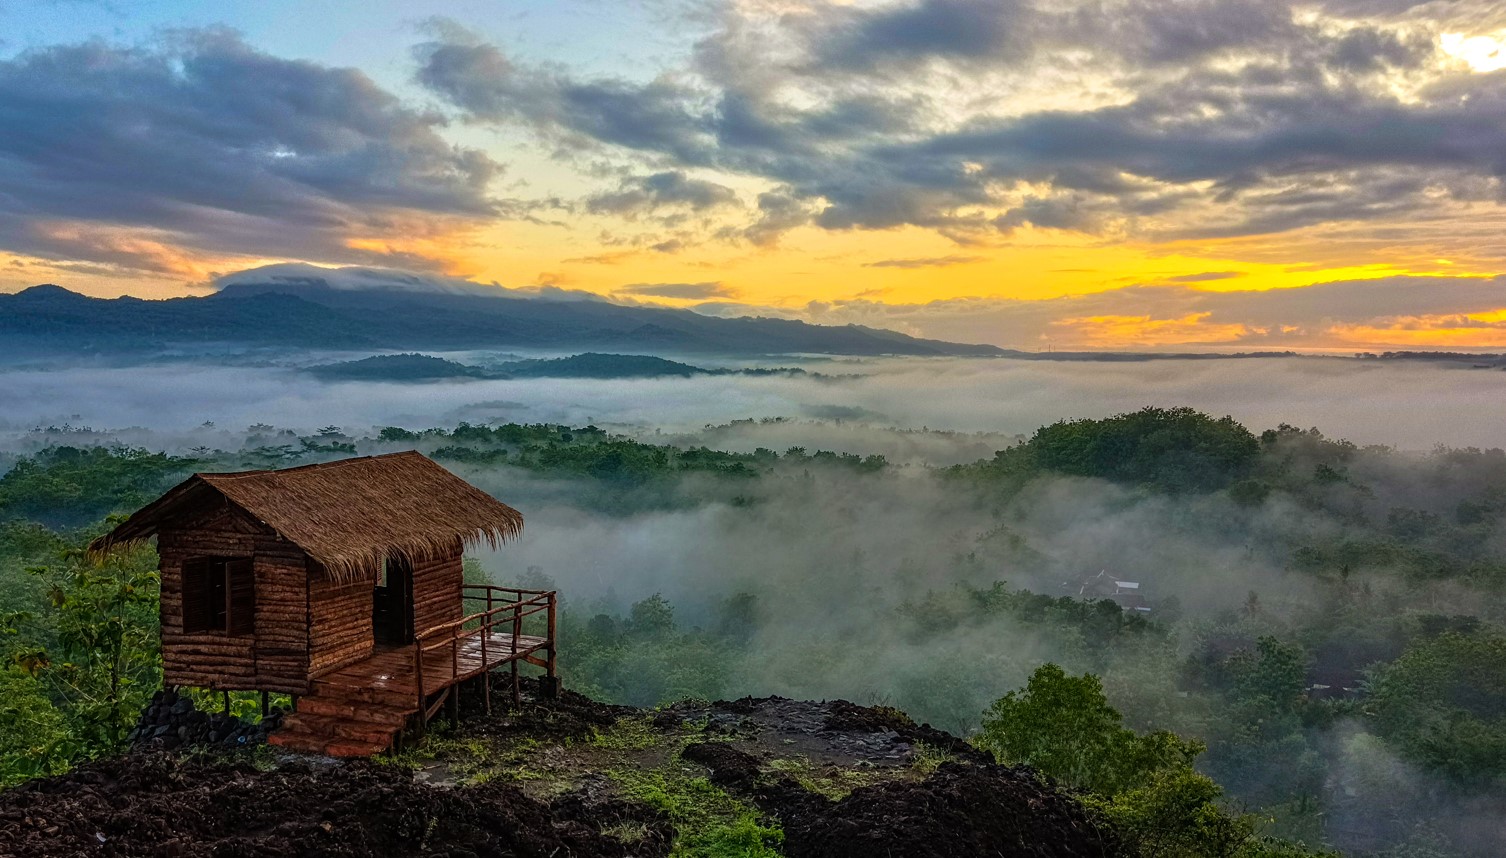 Pesona Keindahan Wisata Gunung Ireng di Patuk Gunung Kidul Yogyakarta